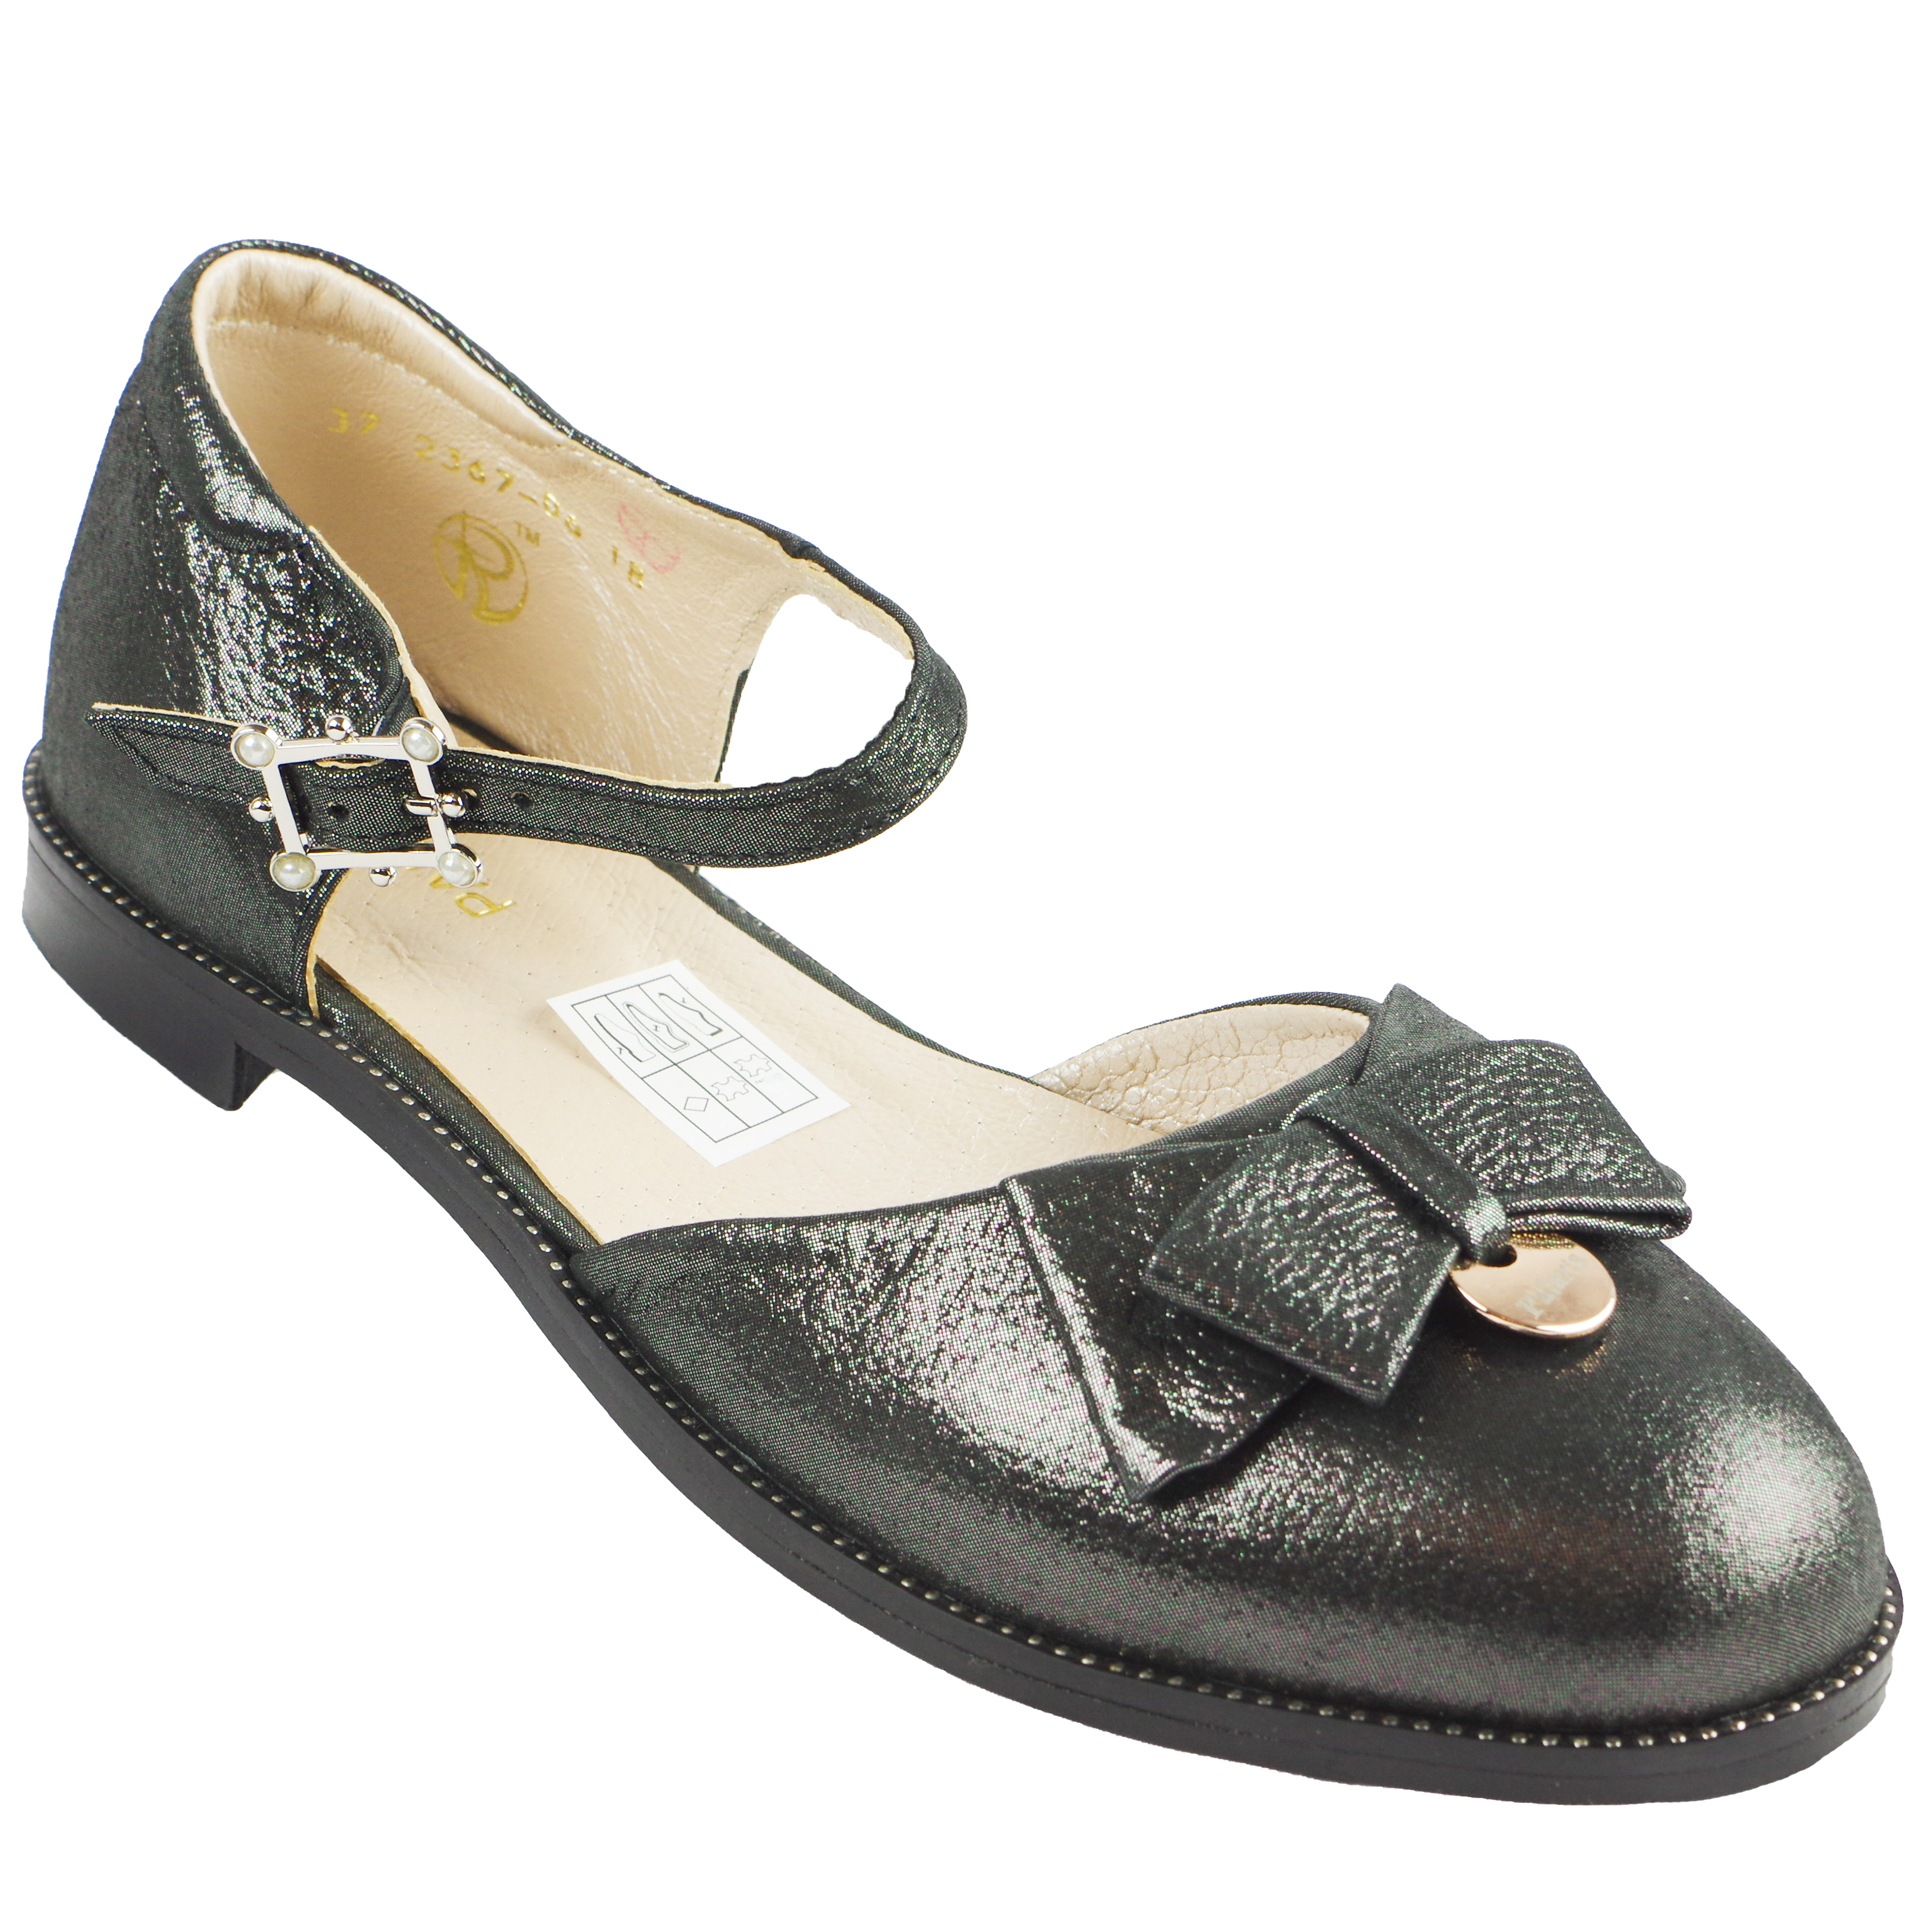 Туфли подростковые (1463) материал Натуральная кожа, цвет Черный  для девочки 36-40 размеры – Sole Kids